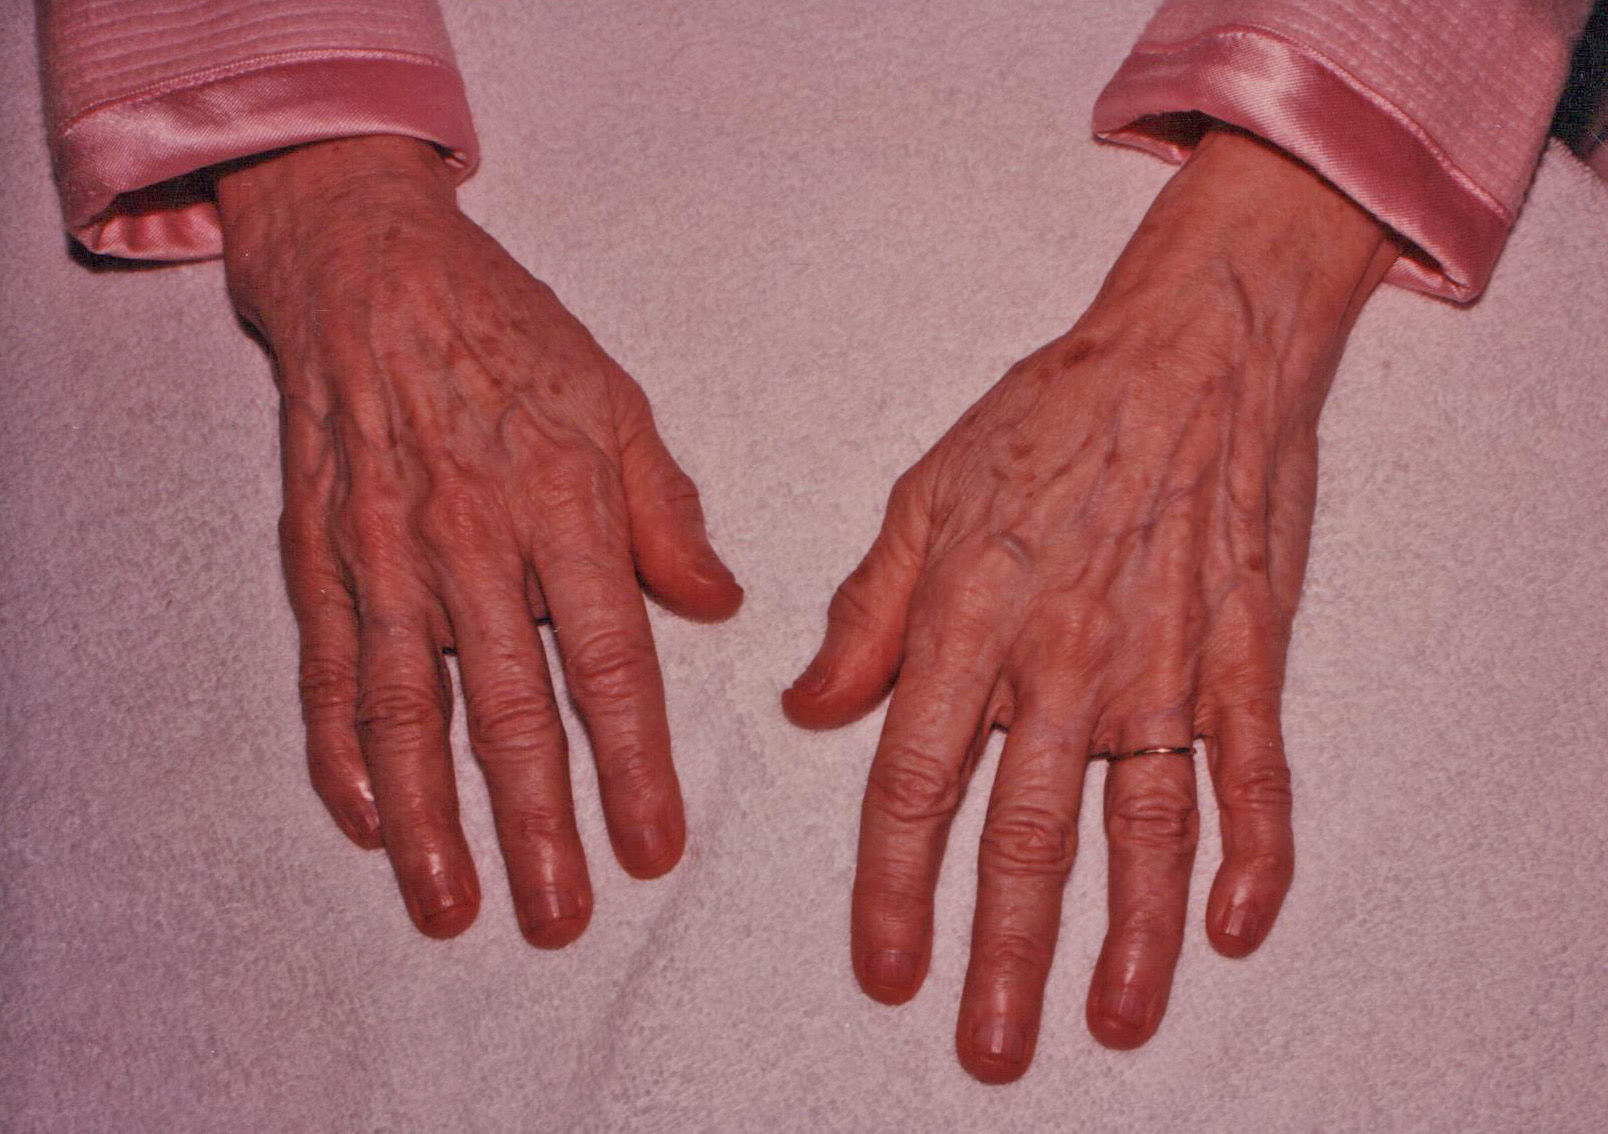 My grandmother's hands